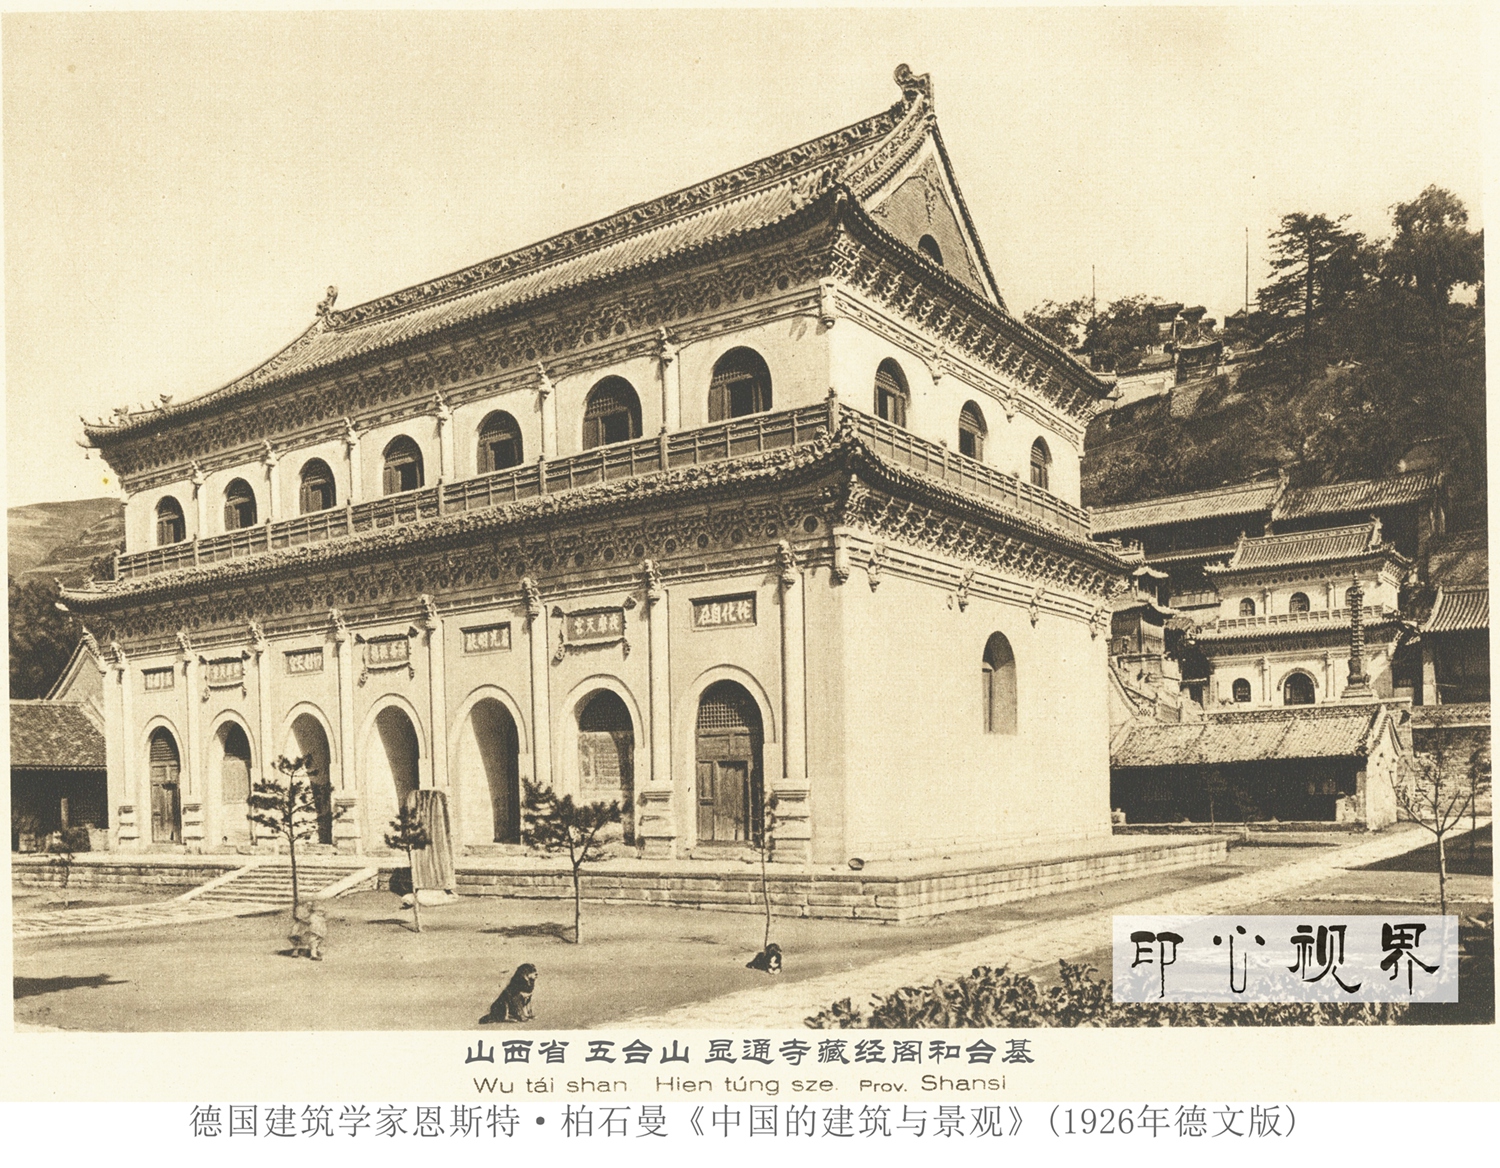 五台山的显通寺藏经阁和台基--1926年《中国的建筑与景观》